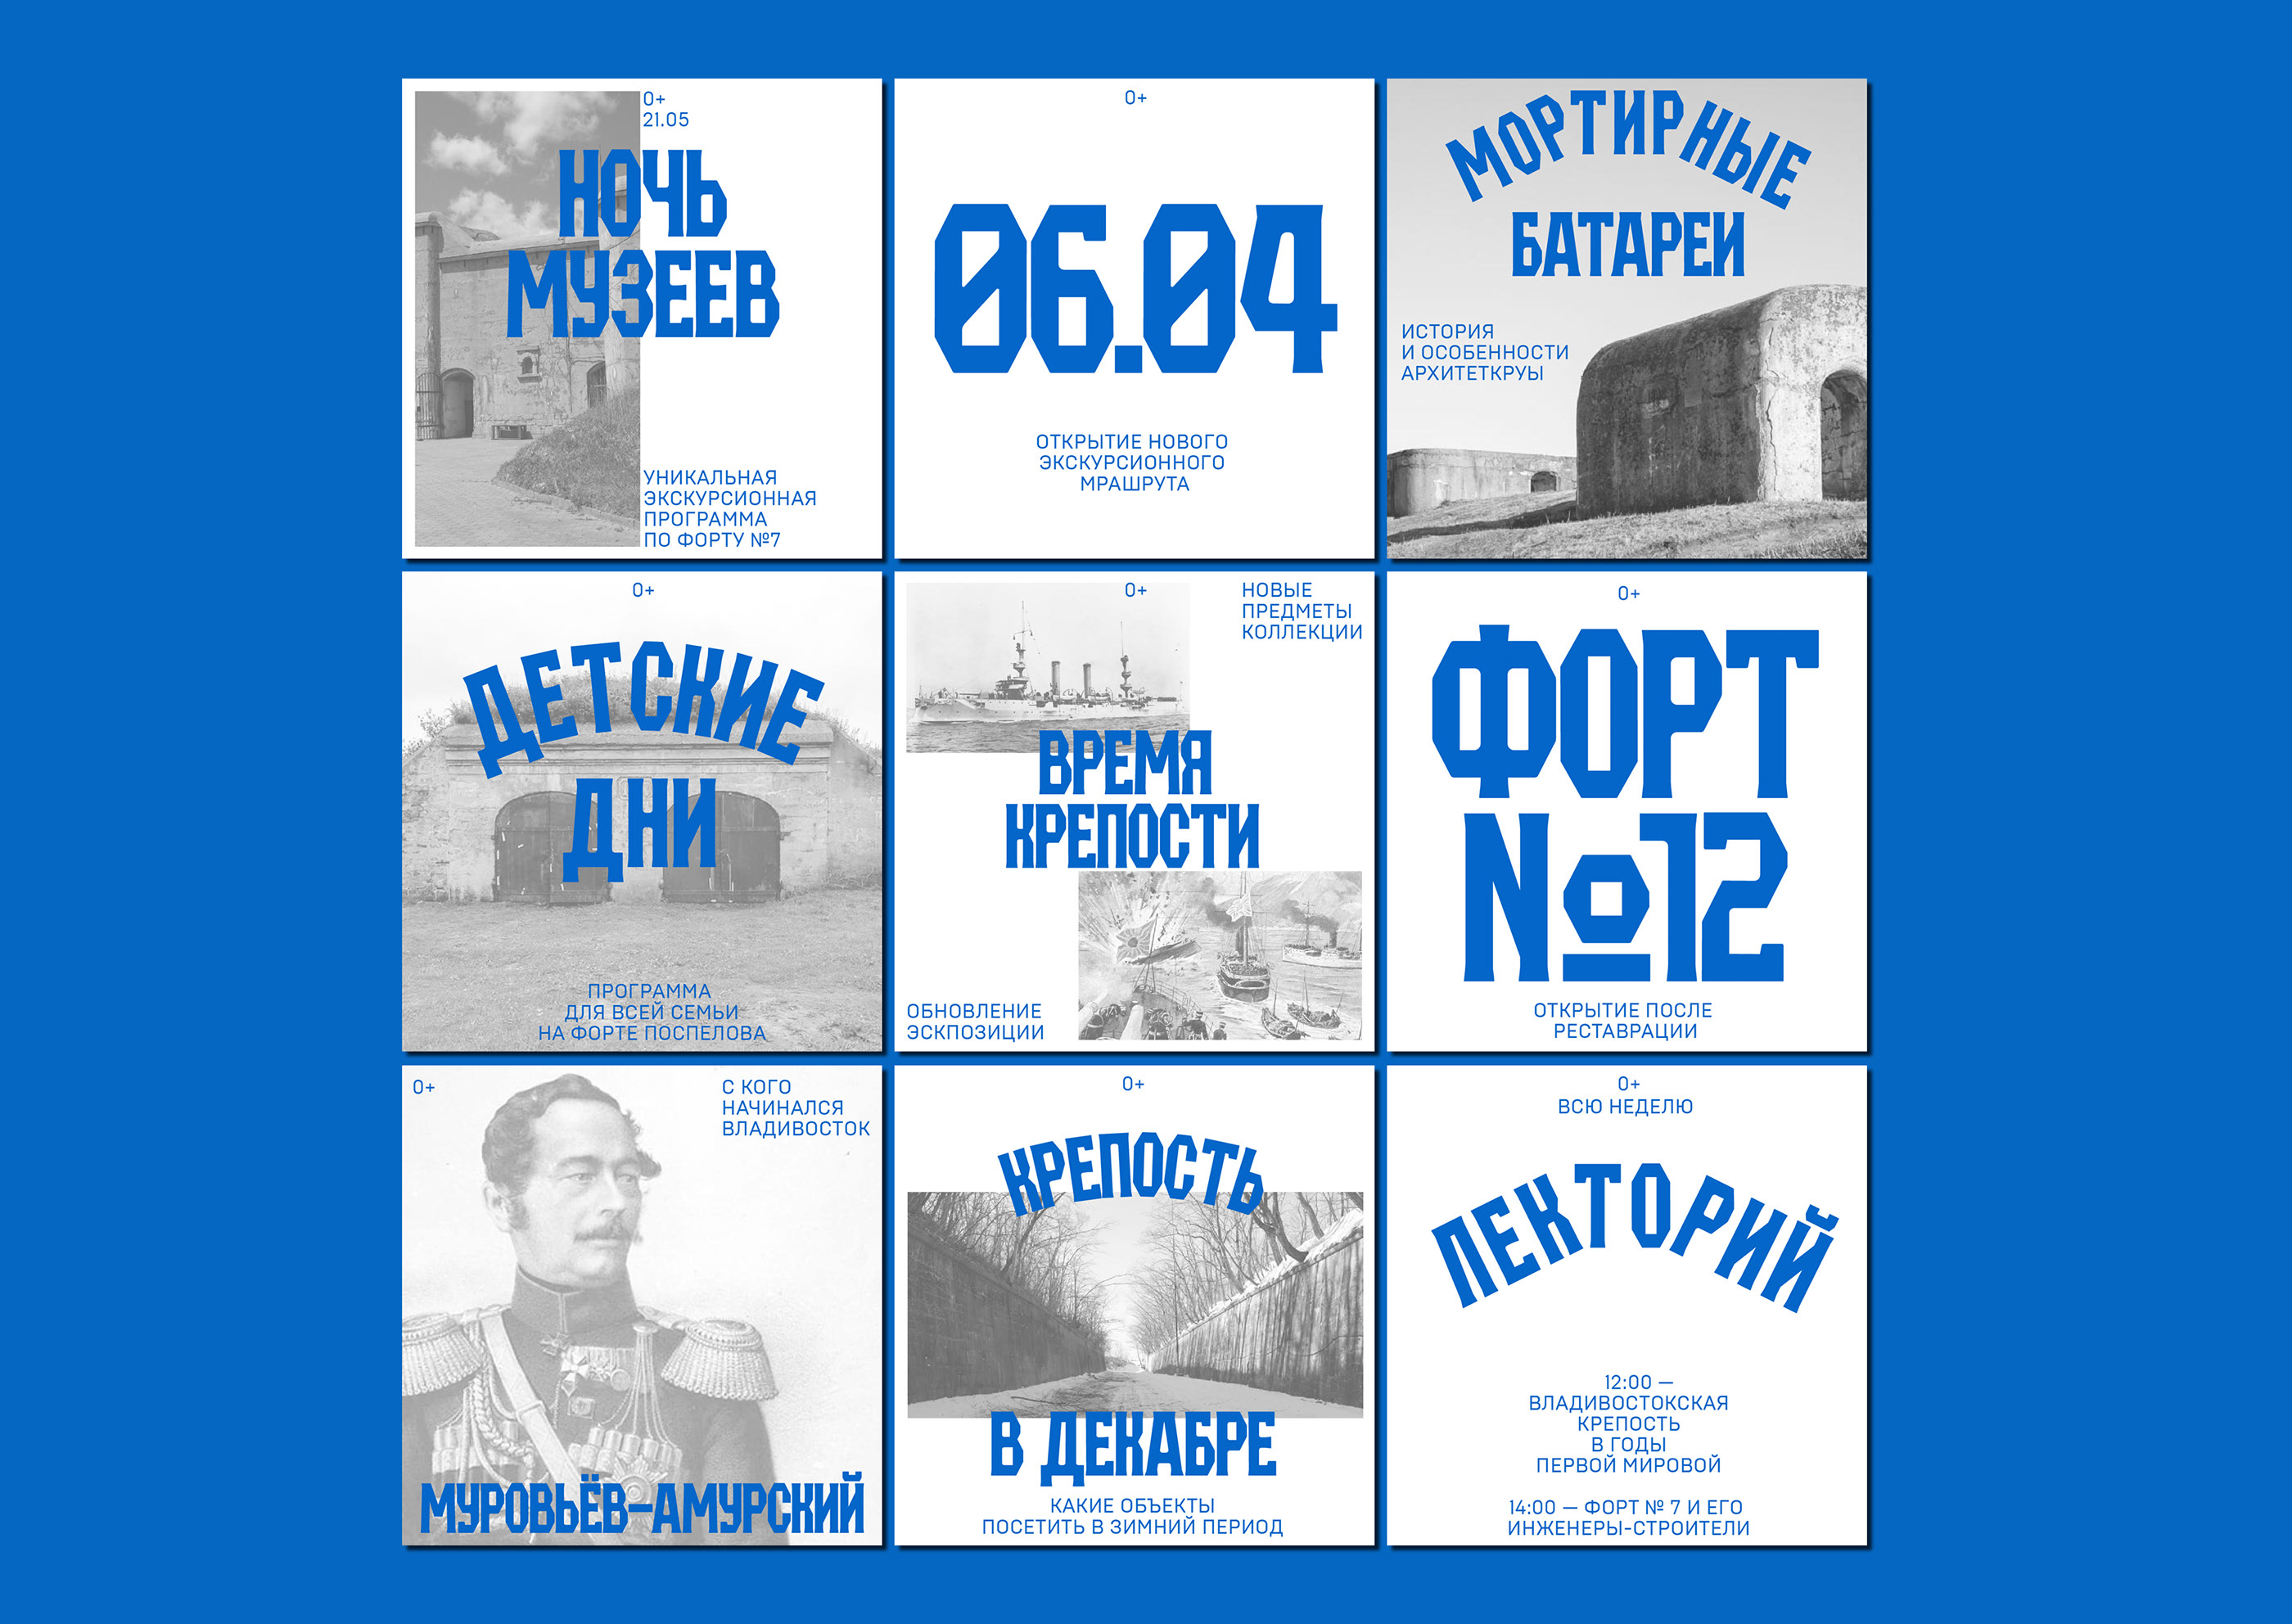 Музей-заповедник Владивостокская Крепость — Изображение №3 — Брендинг, Графика на Dprofile